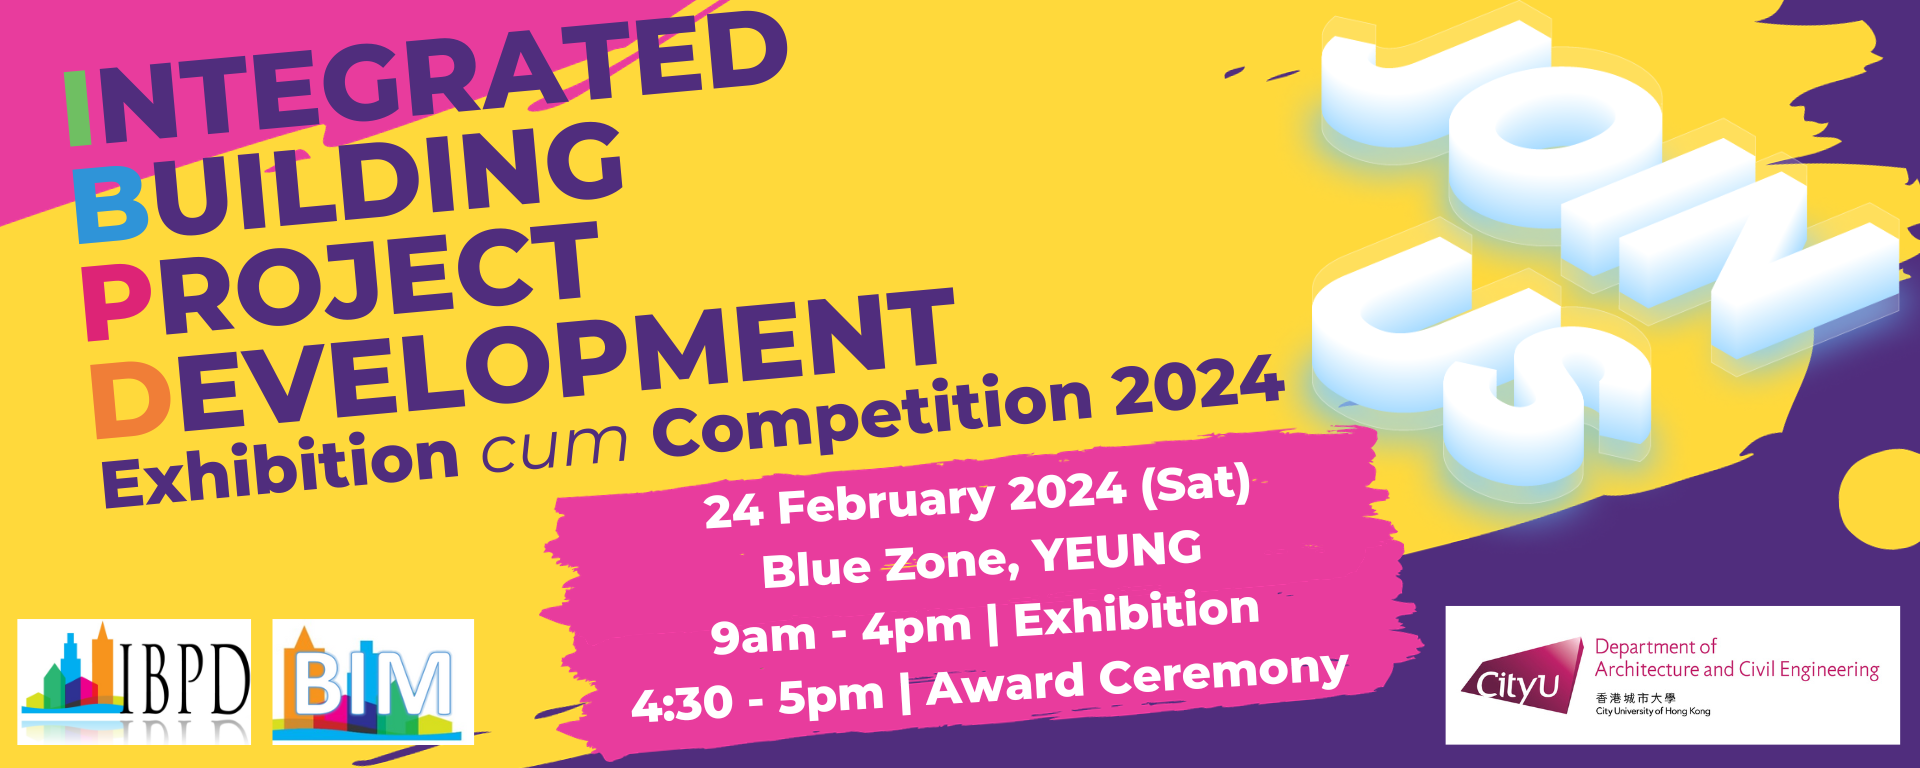 IBPD Exhibition cum Competition 2024